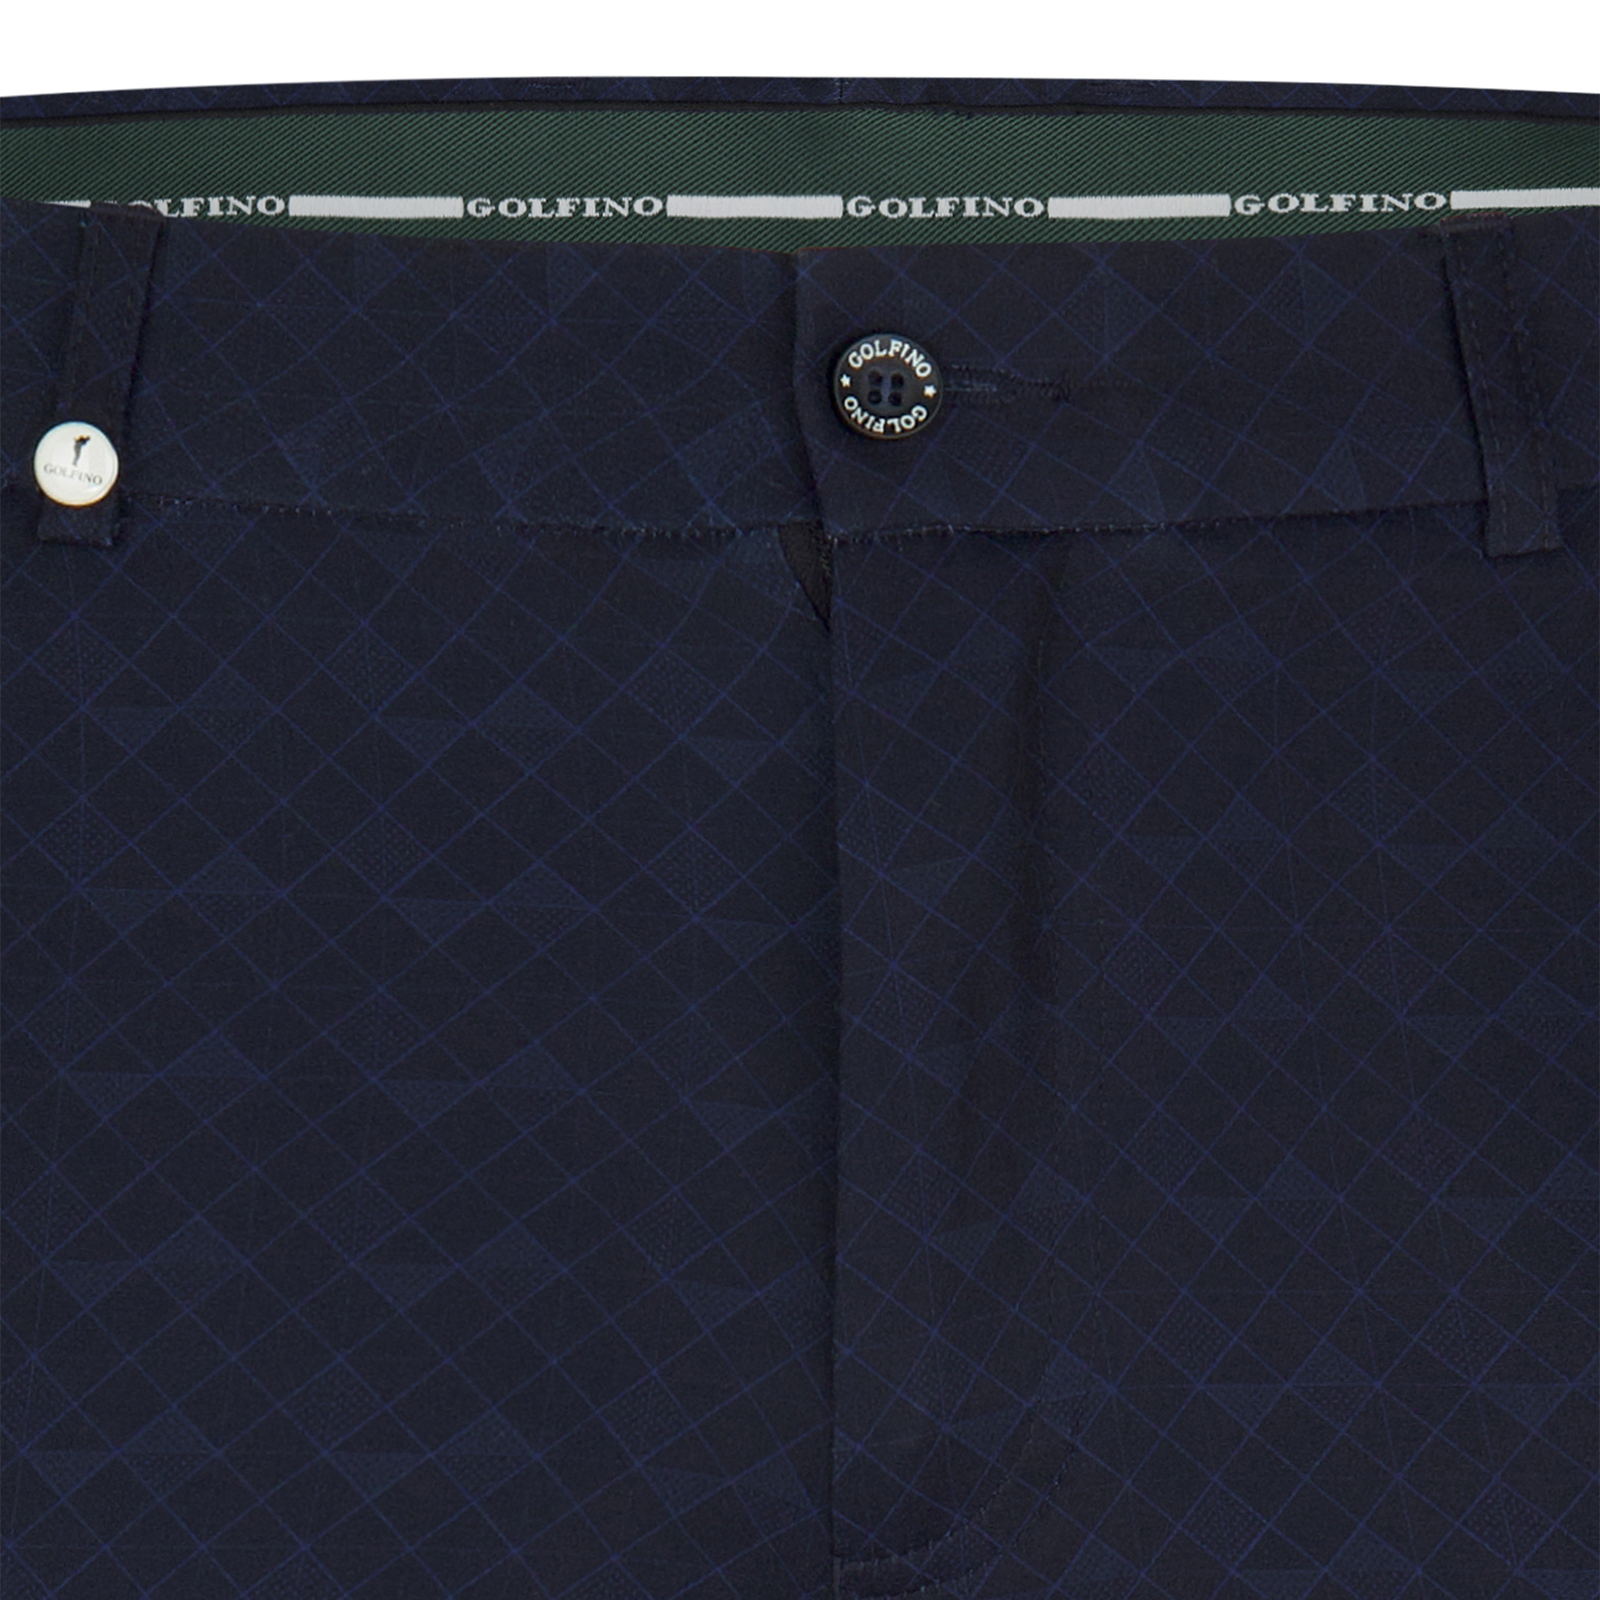 Pantalón de golf elástico con estampado integral y corte ajustado para hombre